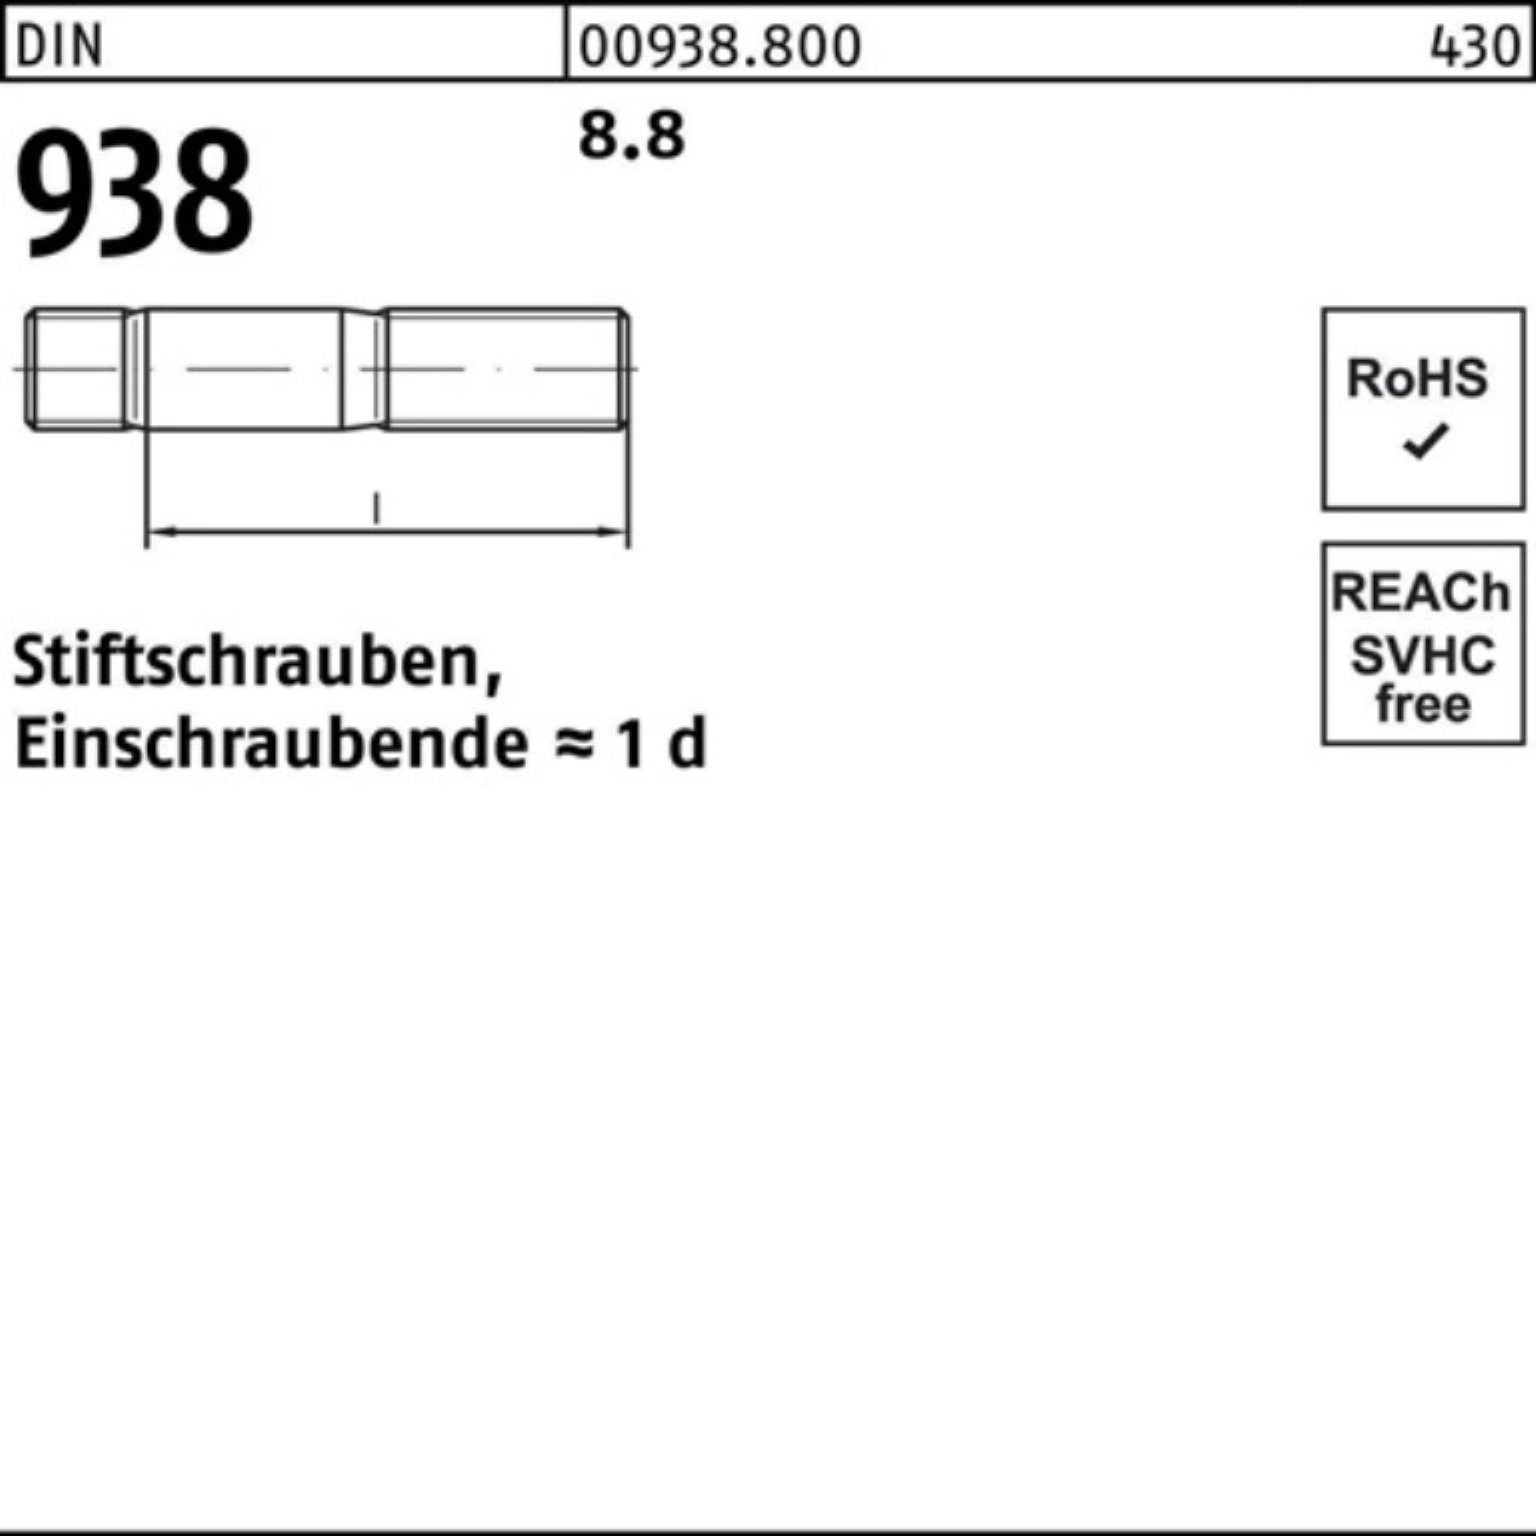 M16x Reyher 938 938 Stiftschraube DIN DIN 8.8 10 100er Stück Pack Sti 8.8 80 Stiftschraube